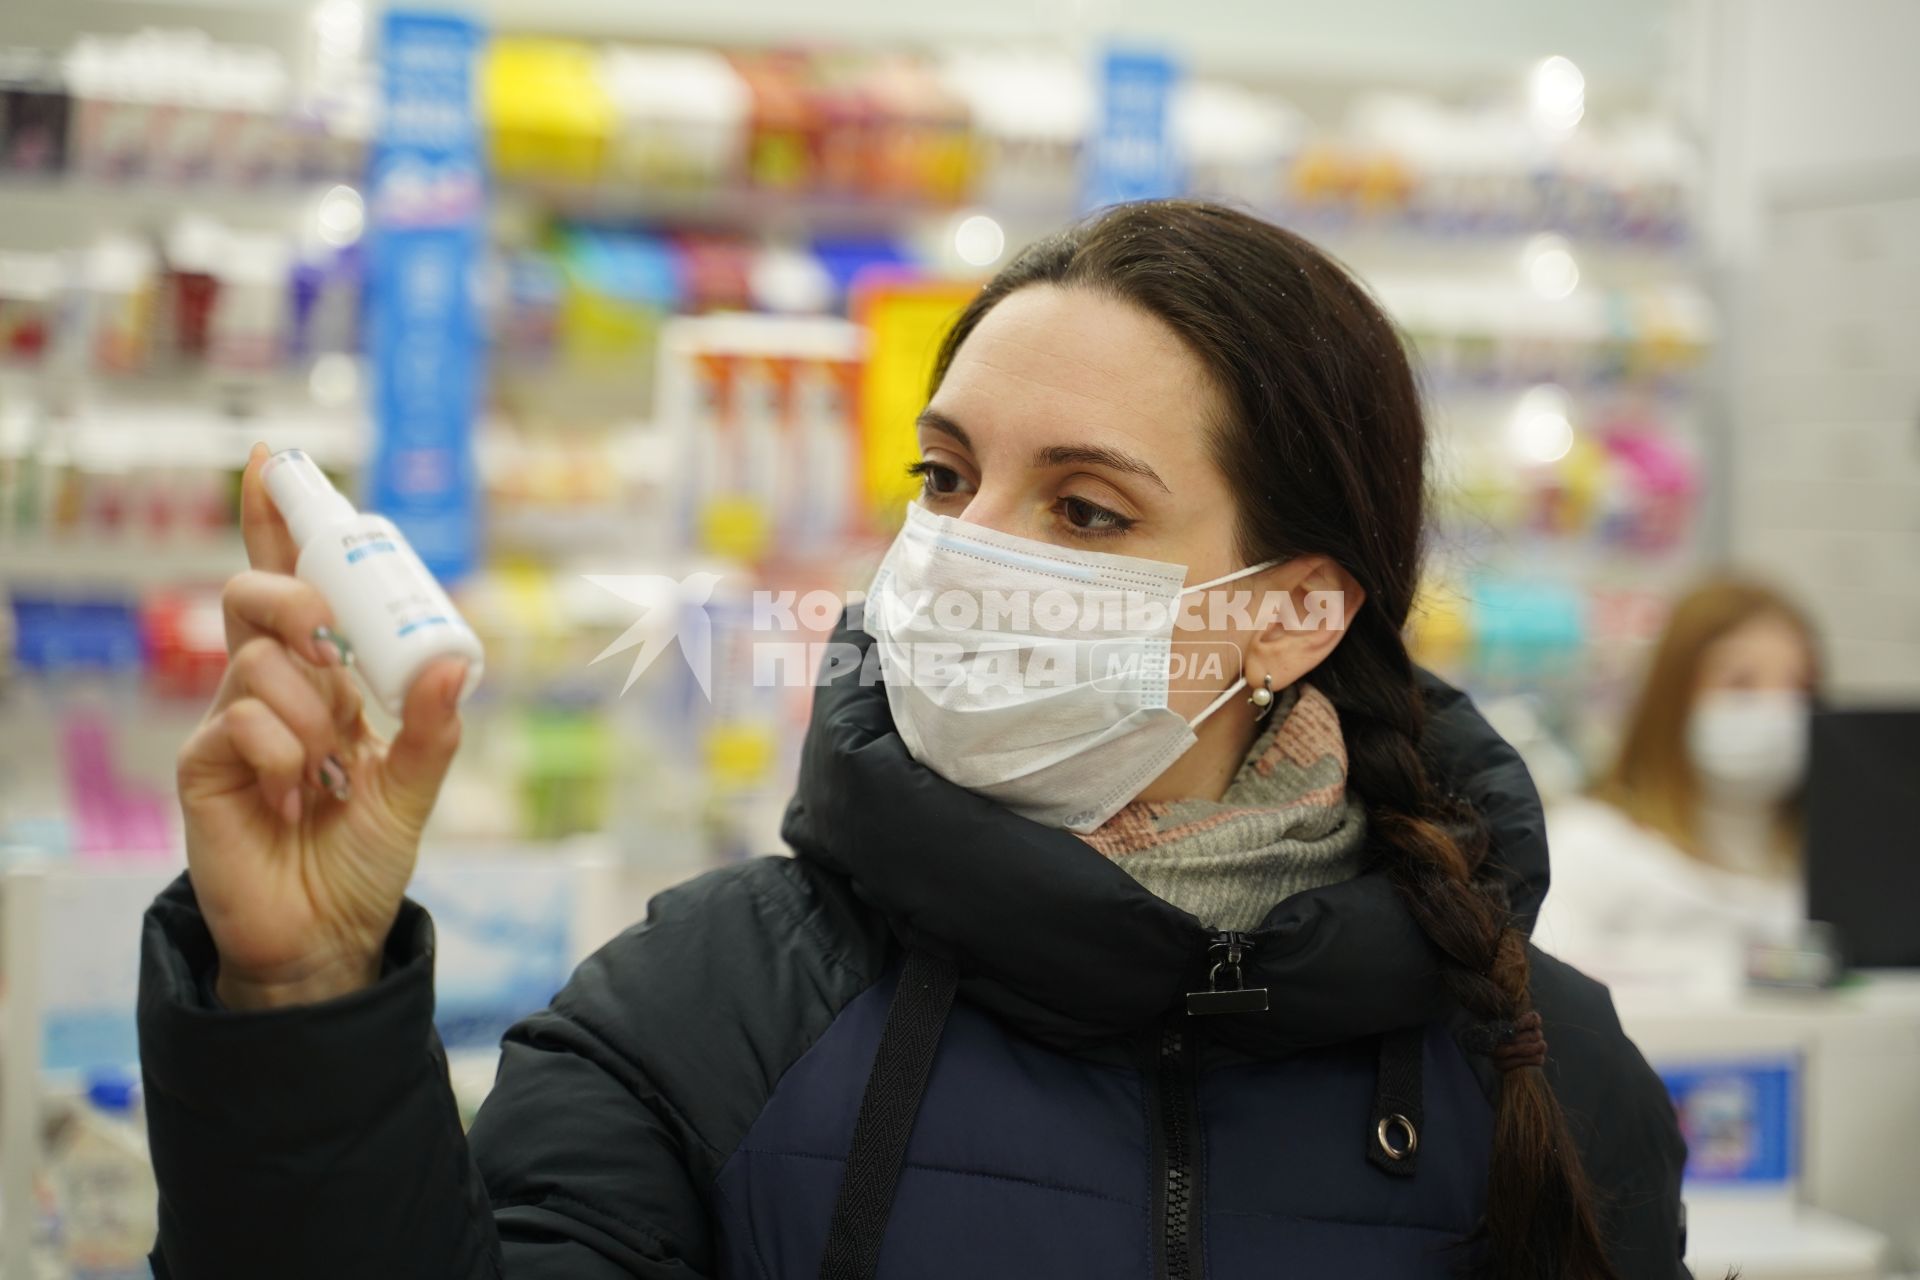 Самара. Девушка в медицинской маске в аптеке.